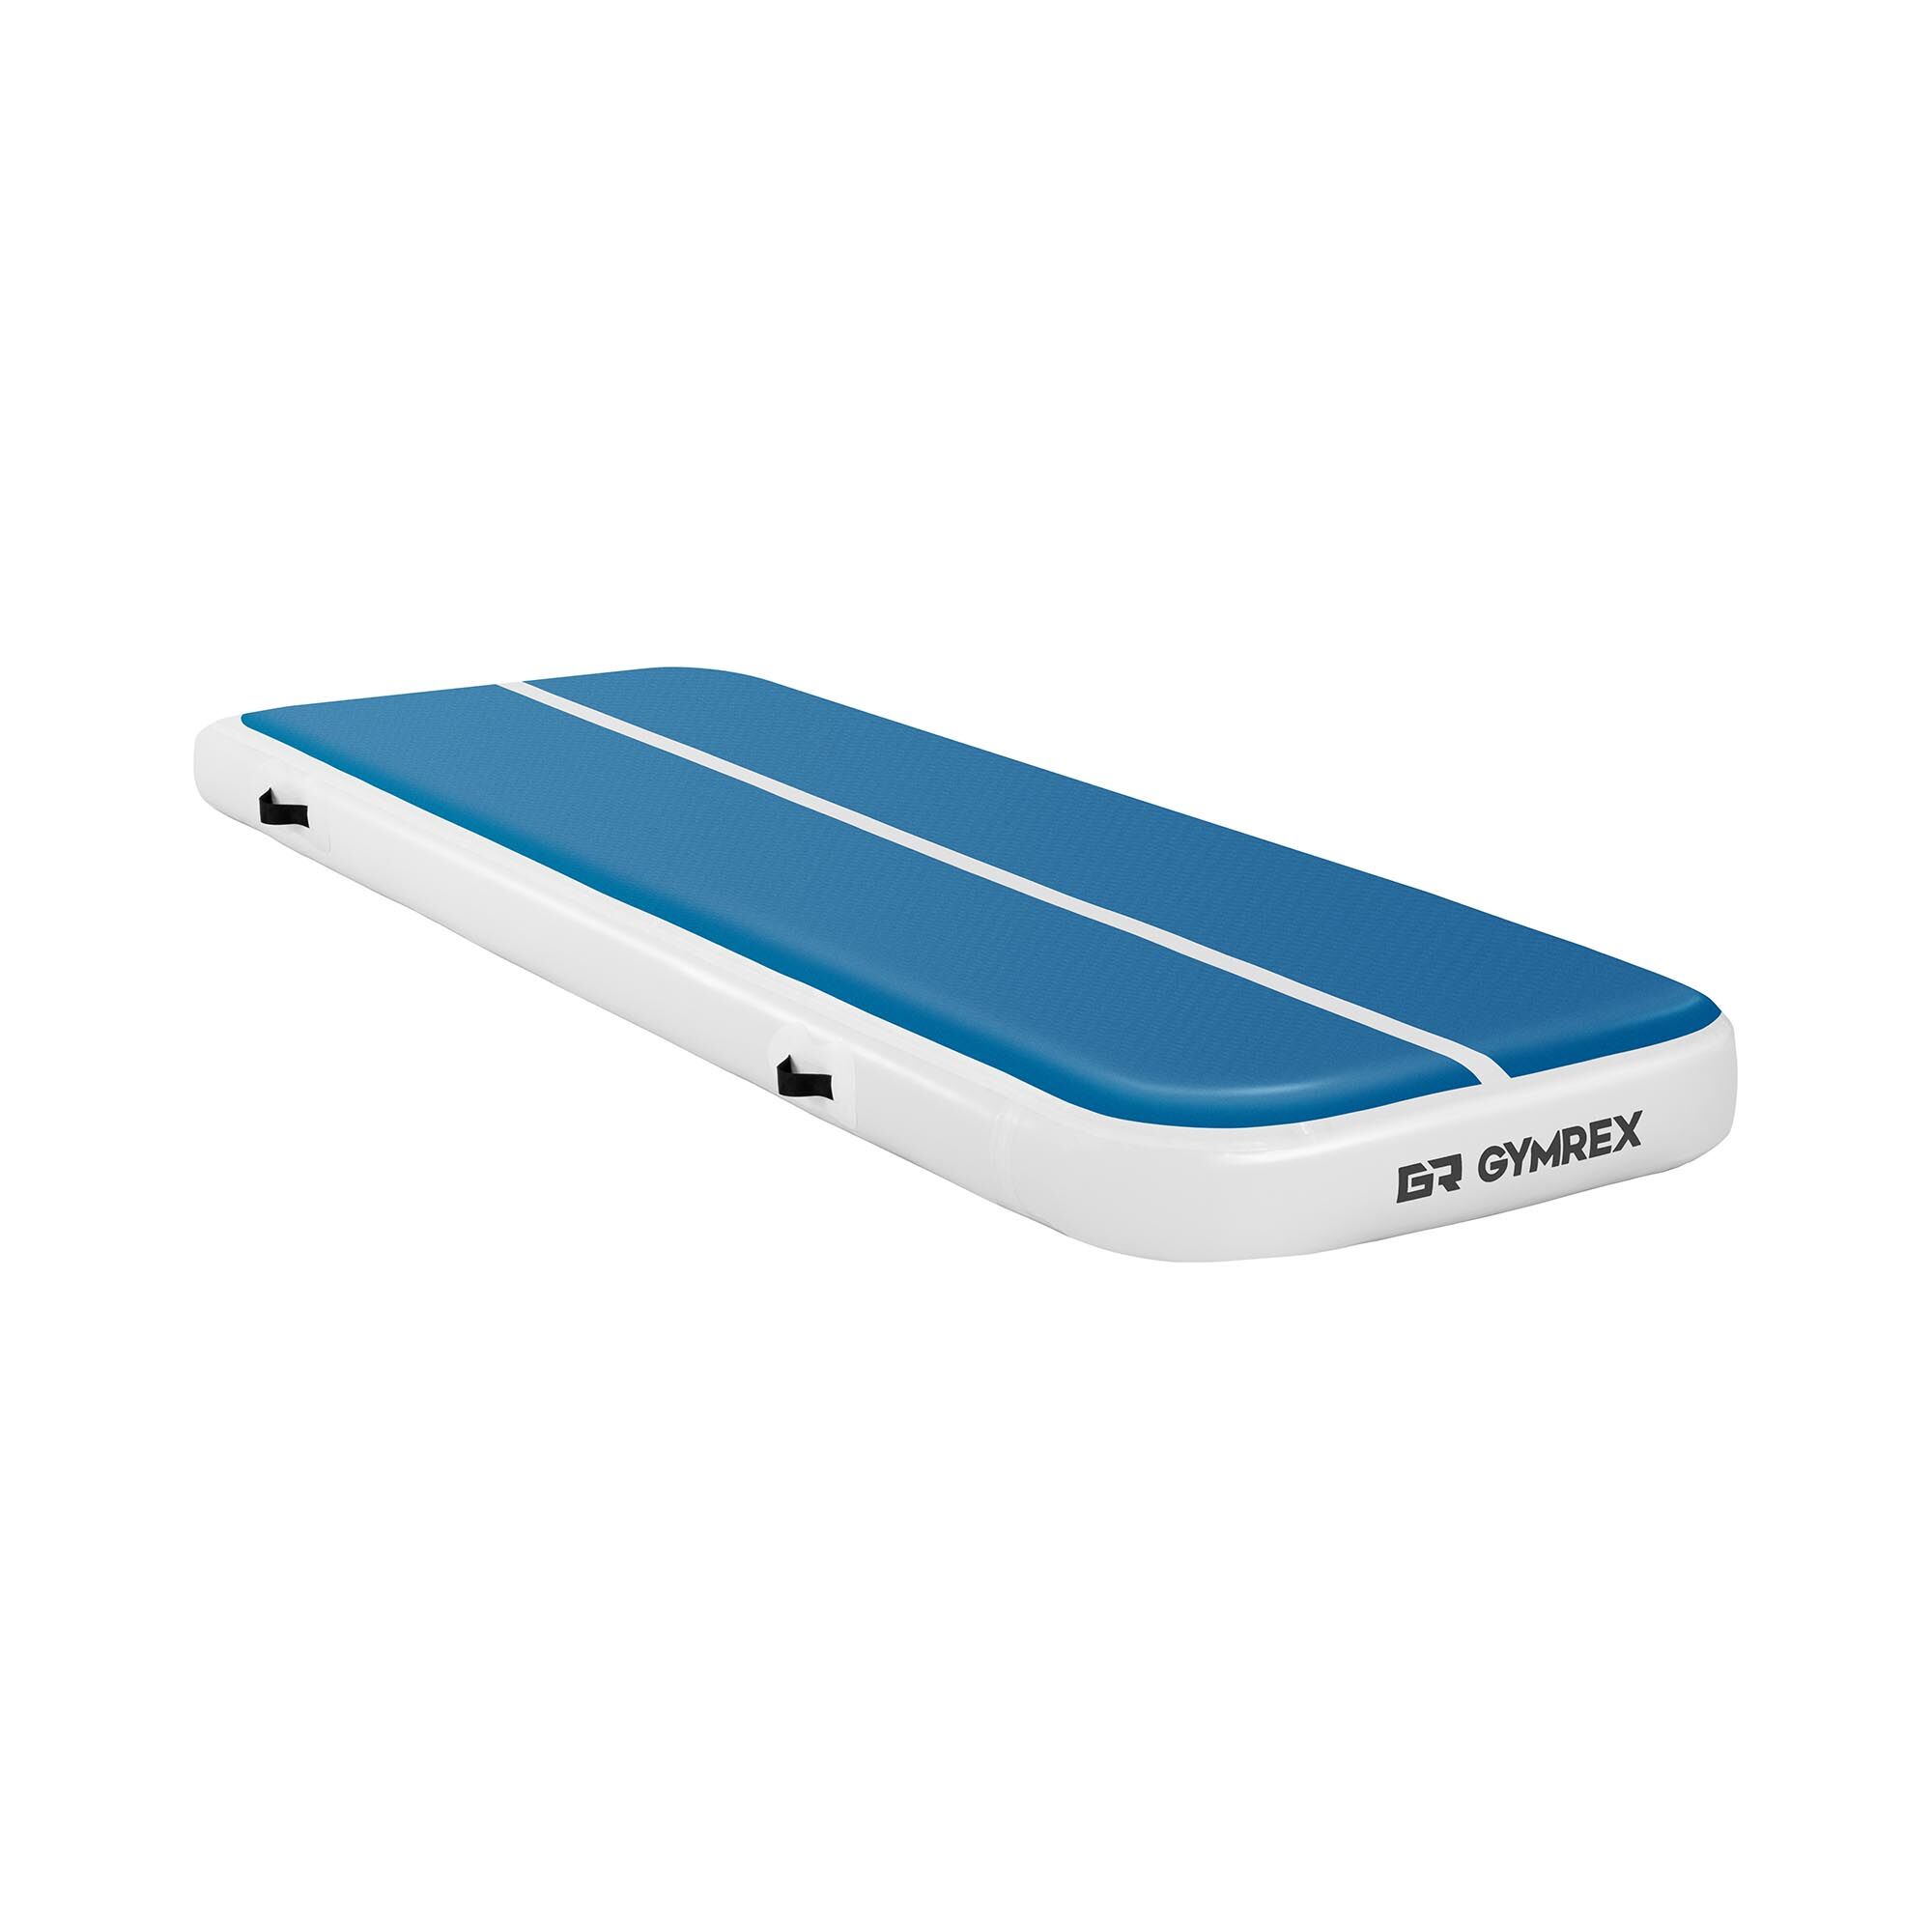 Gymrex Aufblasbare Turnmatte - Airtrack - 300 x 100 x 20 cm - 150 kg - blau/weiß 10230108